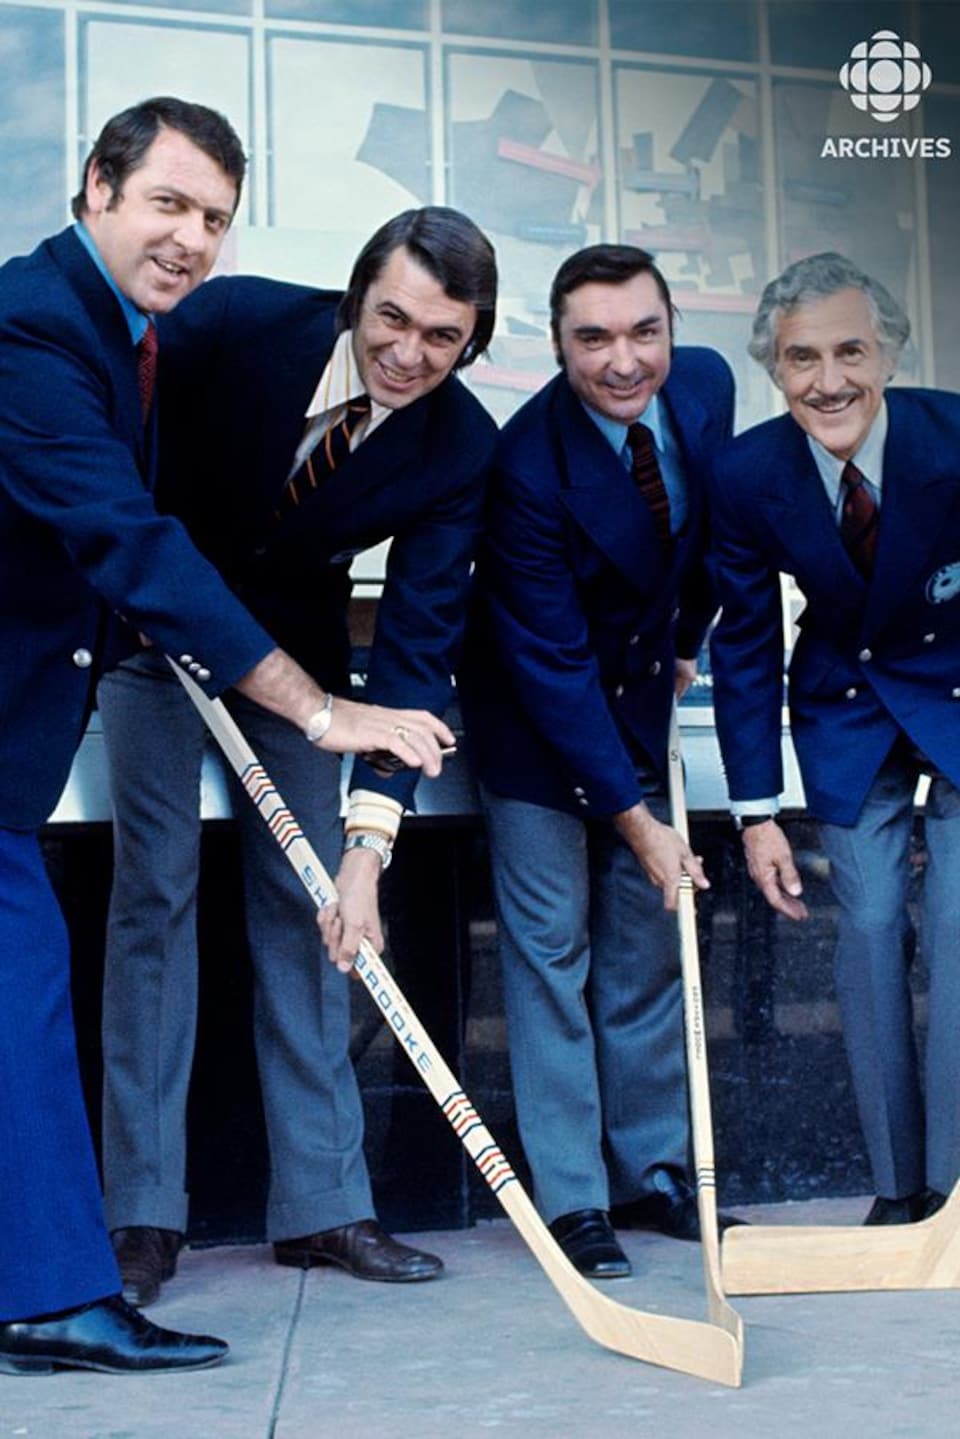 À l'extérieur, debout devant l'édifice du Forum de Montréal, l'analyste Gilles Tremblay et les commentateurs sportifs
Richard Garneau, Lionel Duval et René Lecavalier avec des bâtons de hockey dans les mains.